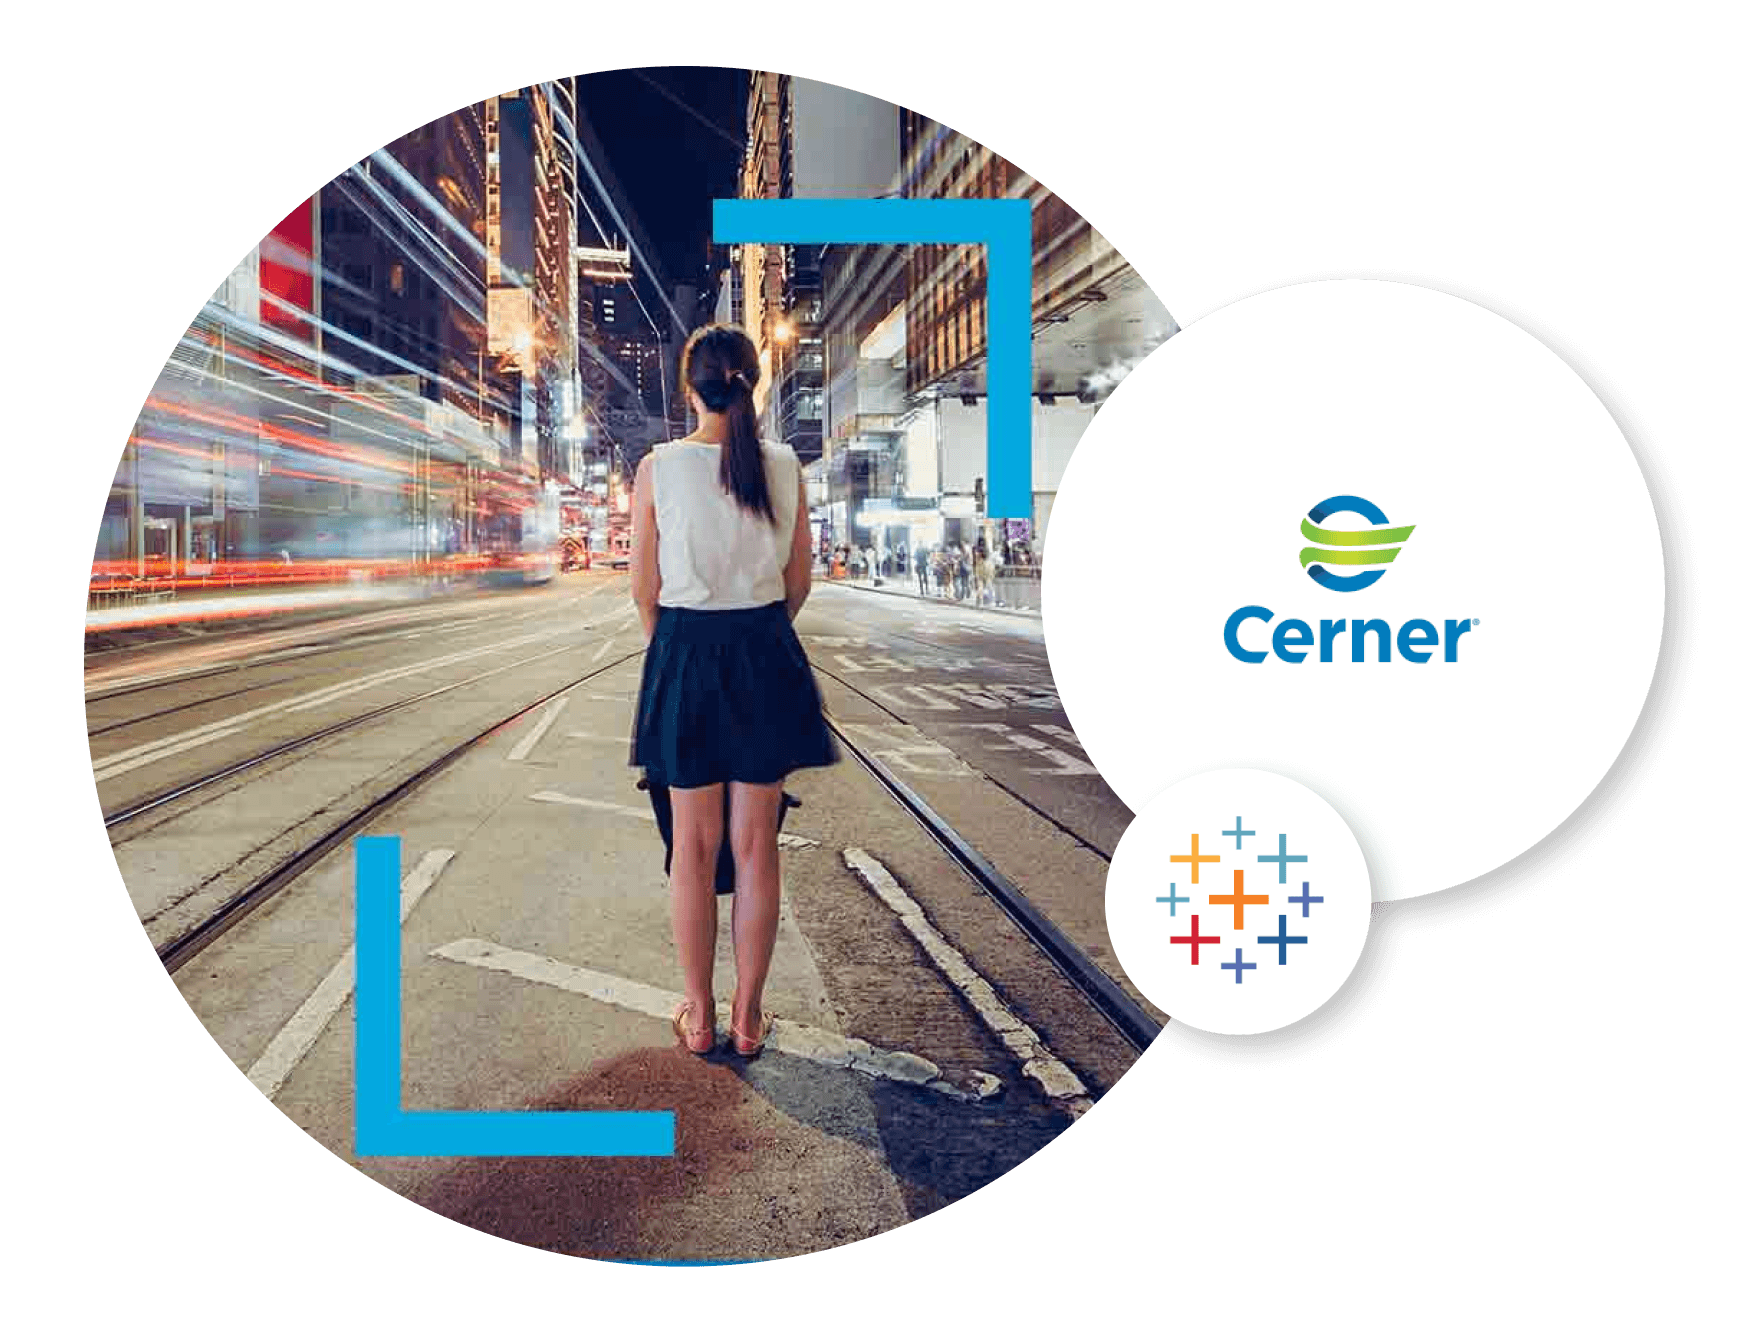 Cerner Logo & Image